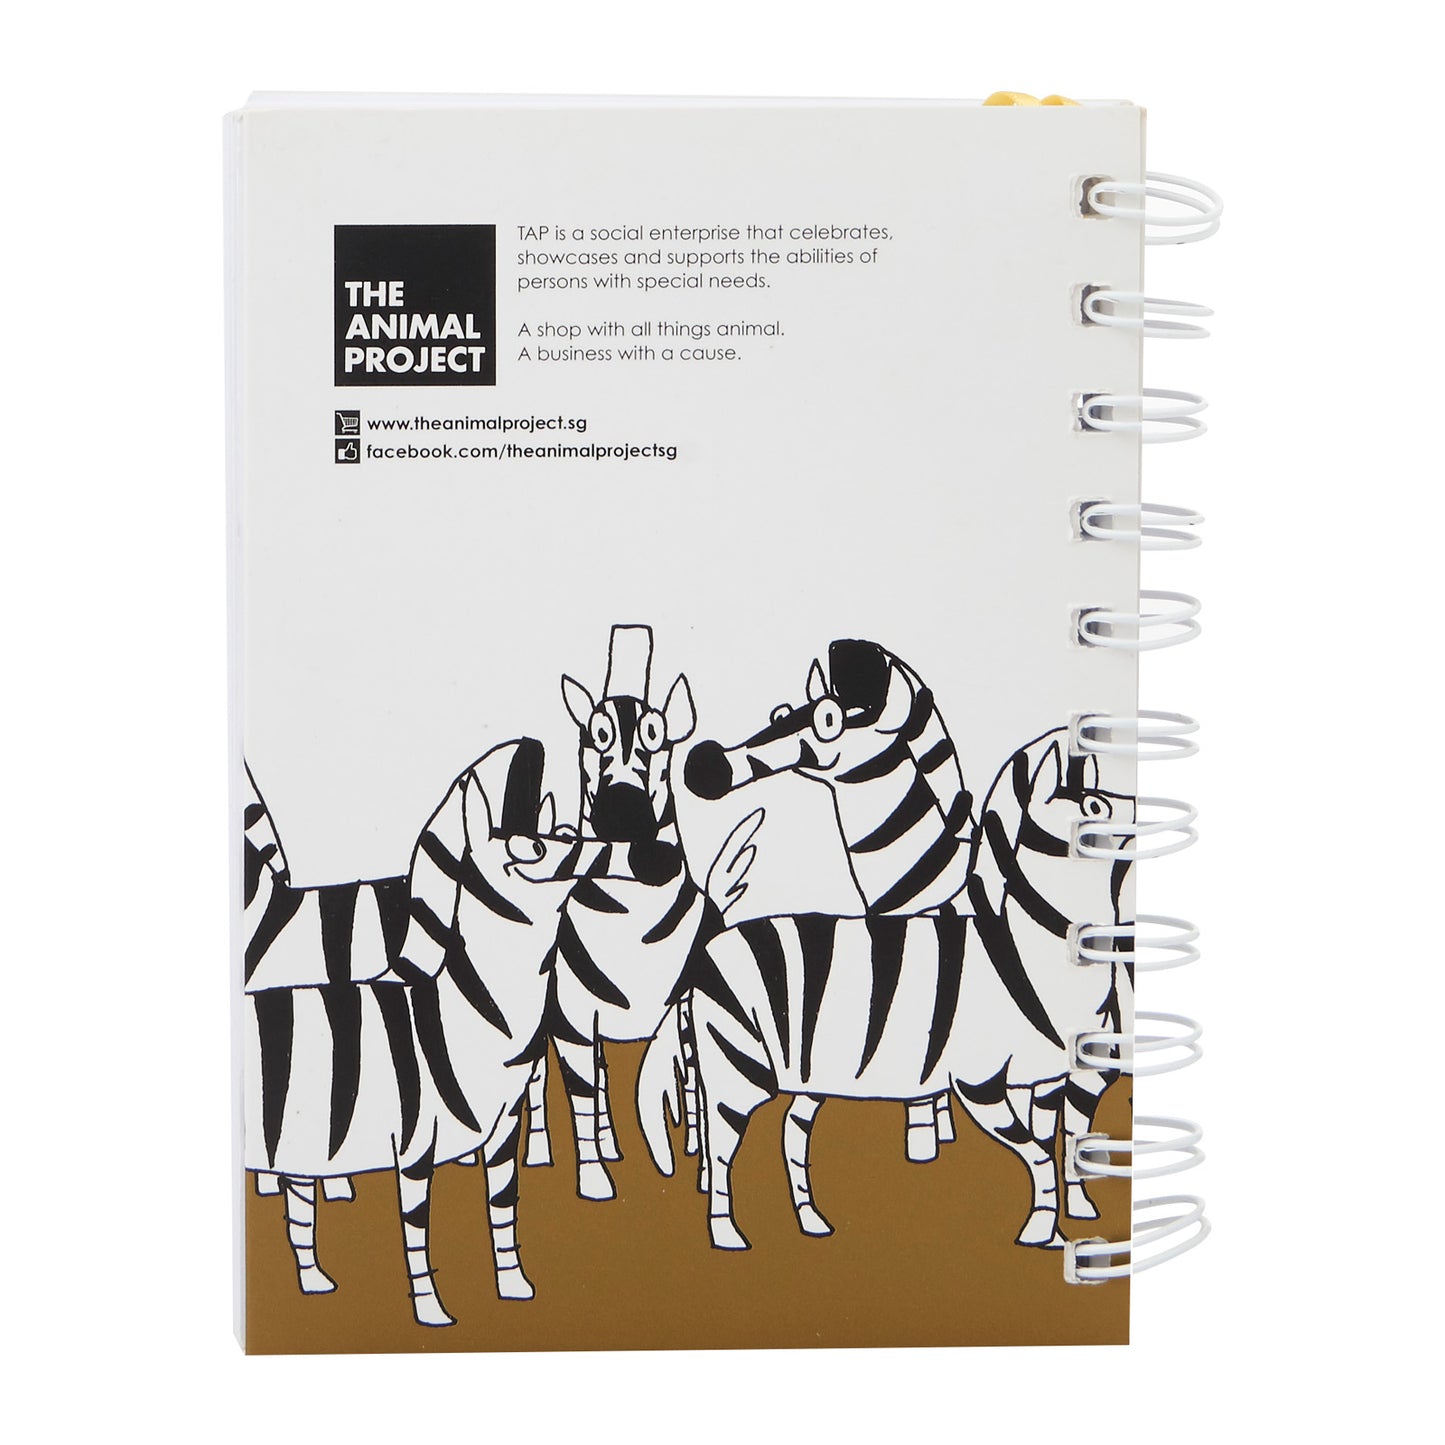 A5 Notebook - Zebra